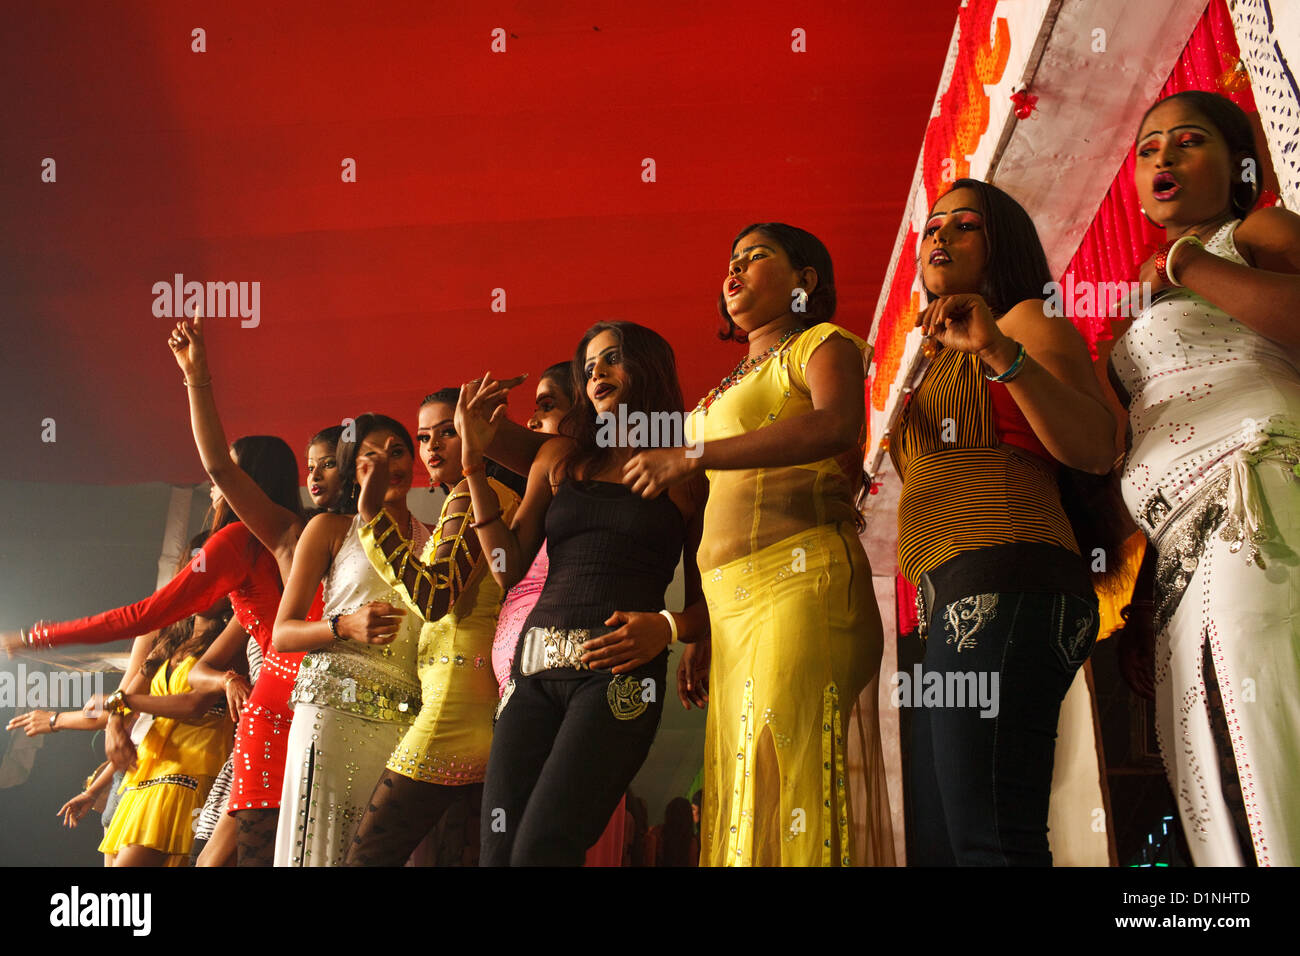 Frauen tanzen auf der Bühne im Theater am Abend Tanz zeigen Sonepur Mela, Bihar, Indien Stockfoto